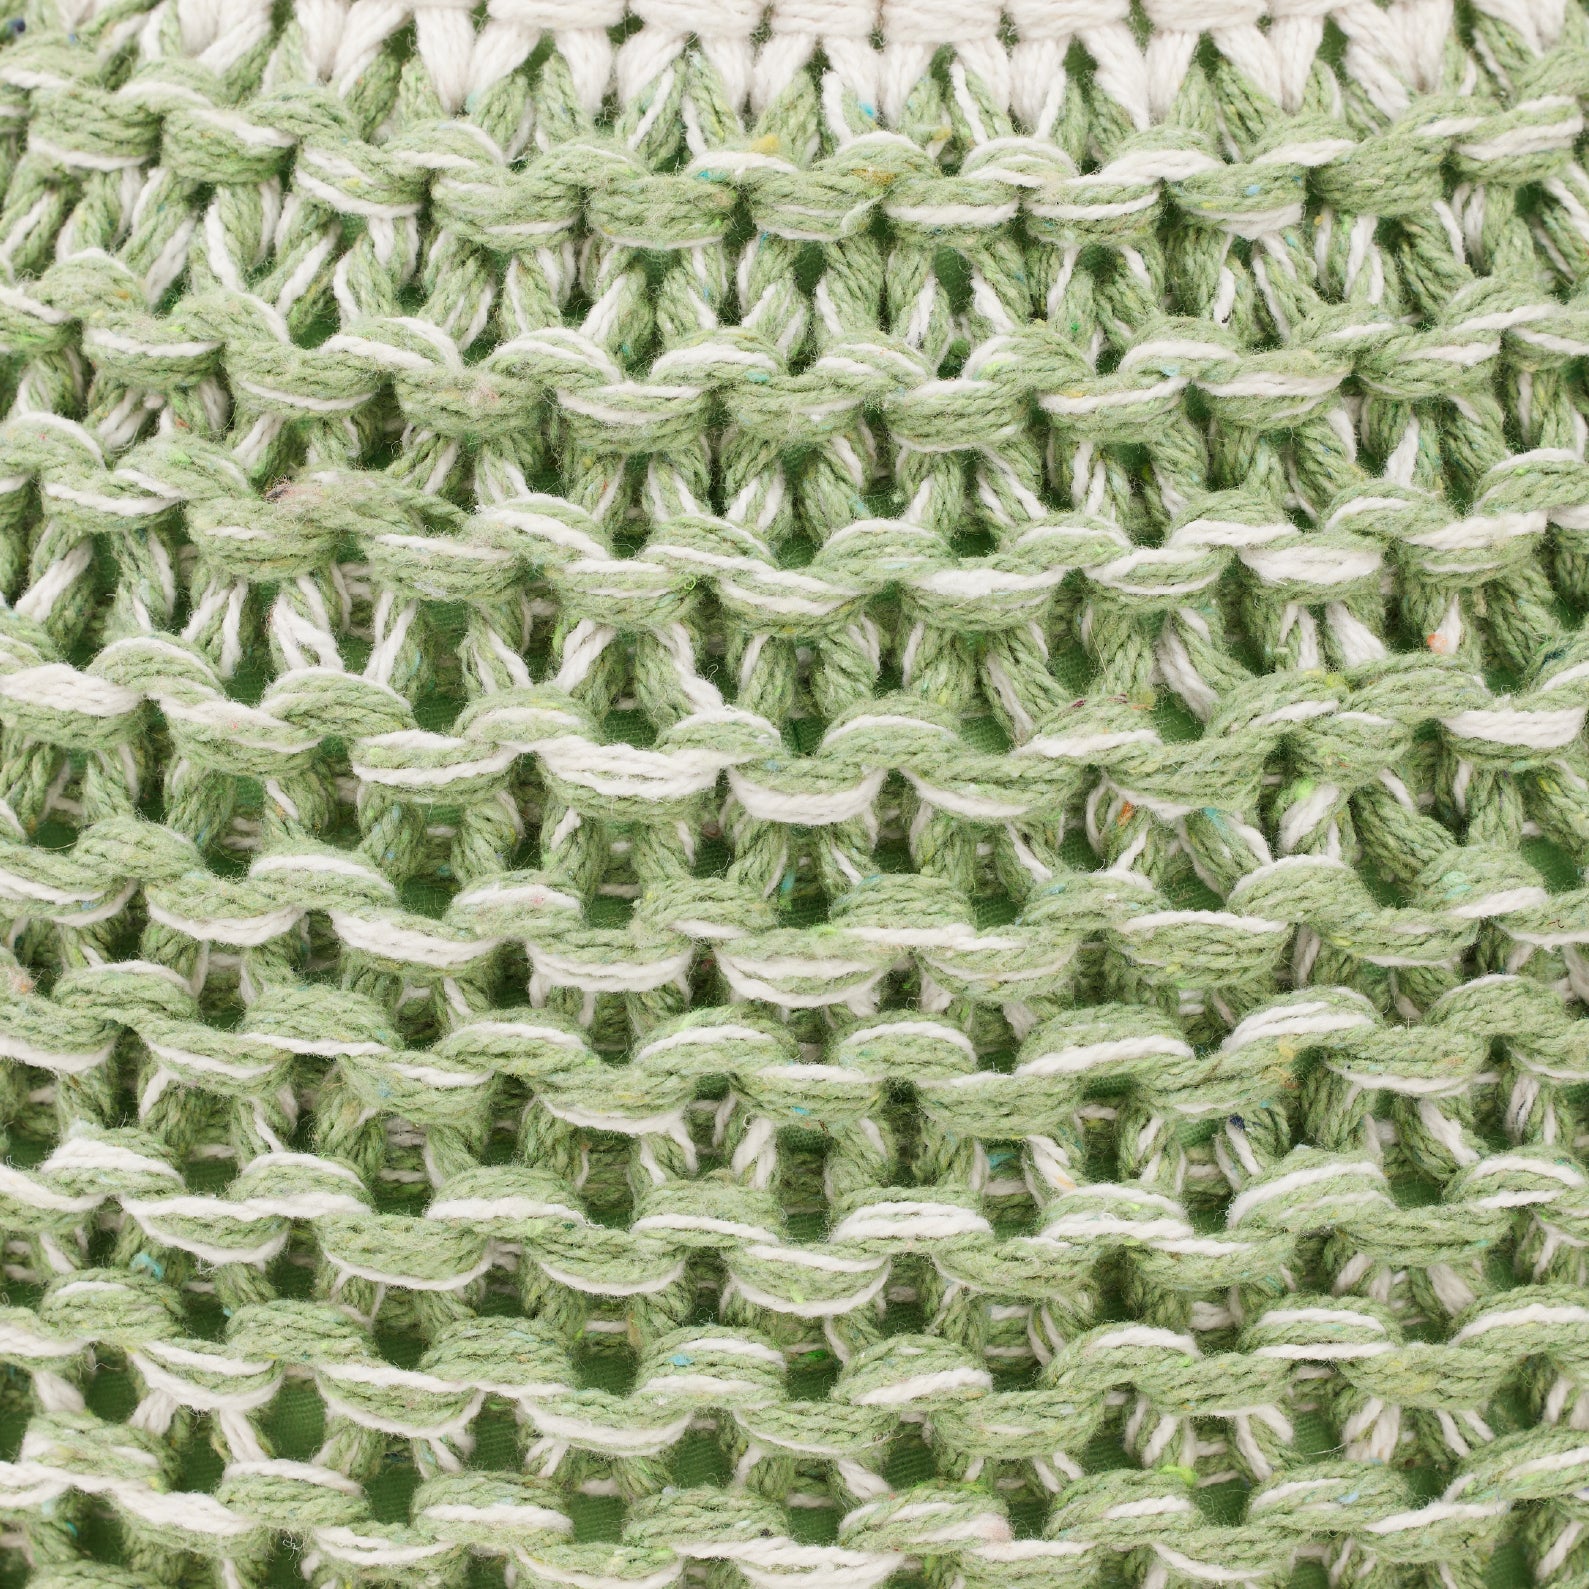 Green Hand-Knitted Pouf | เก้าอี้สตูล ทอมือ